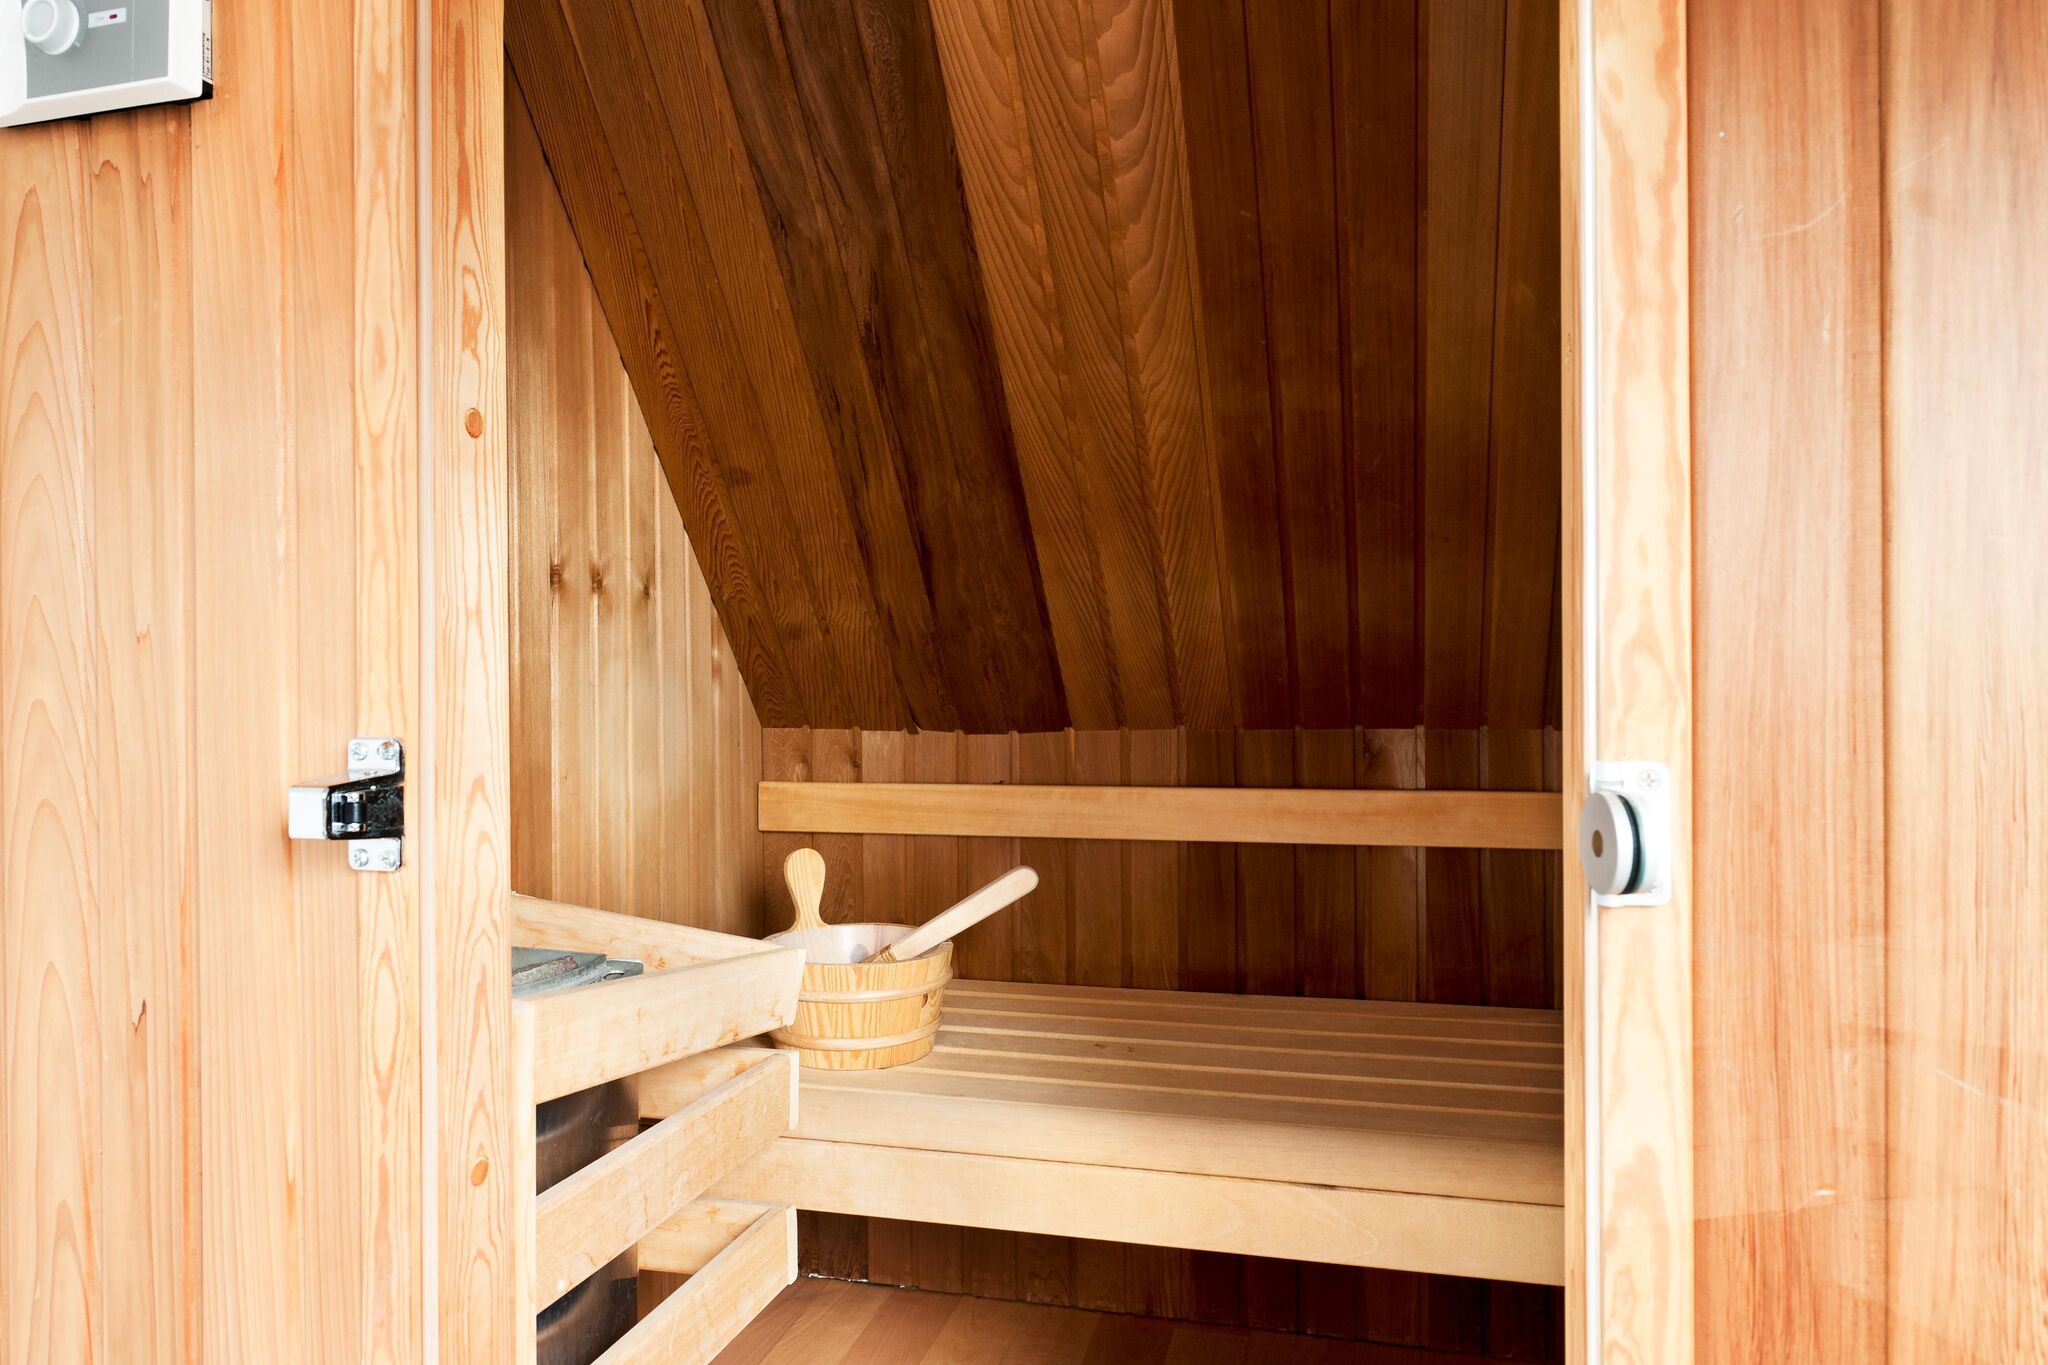 Maison de vacances avec bain à remous et sauna